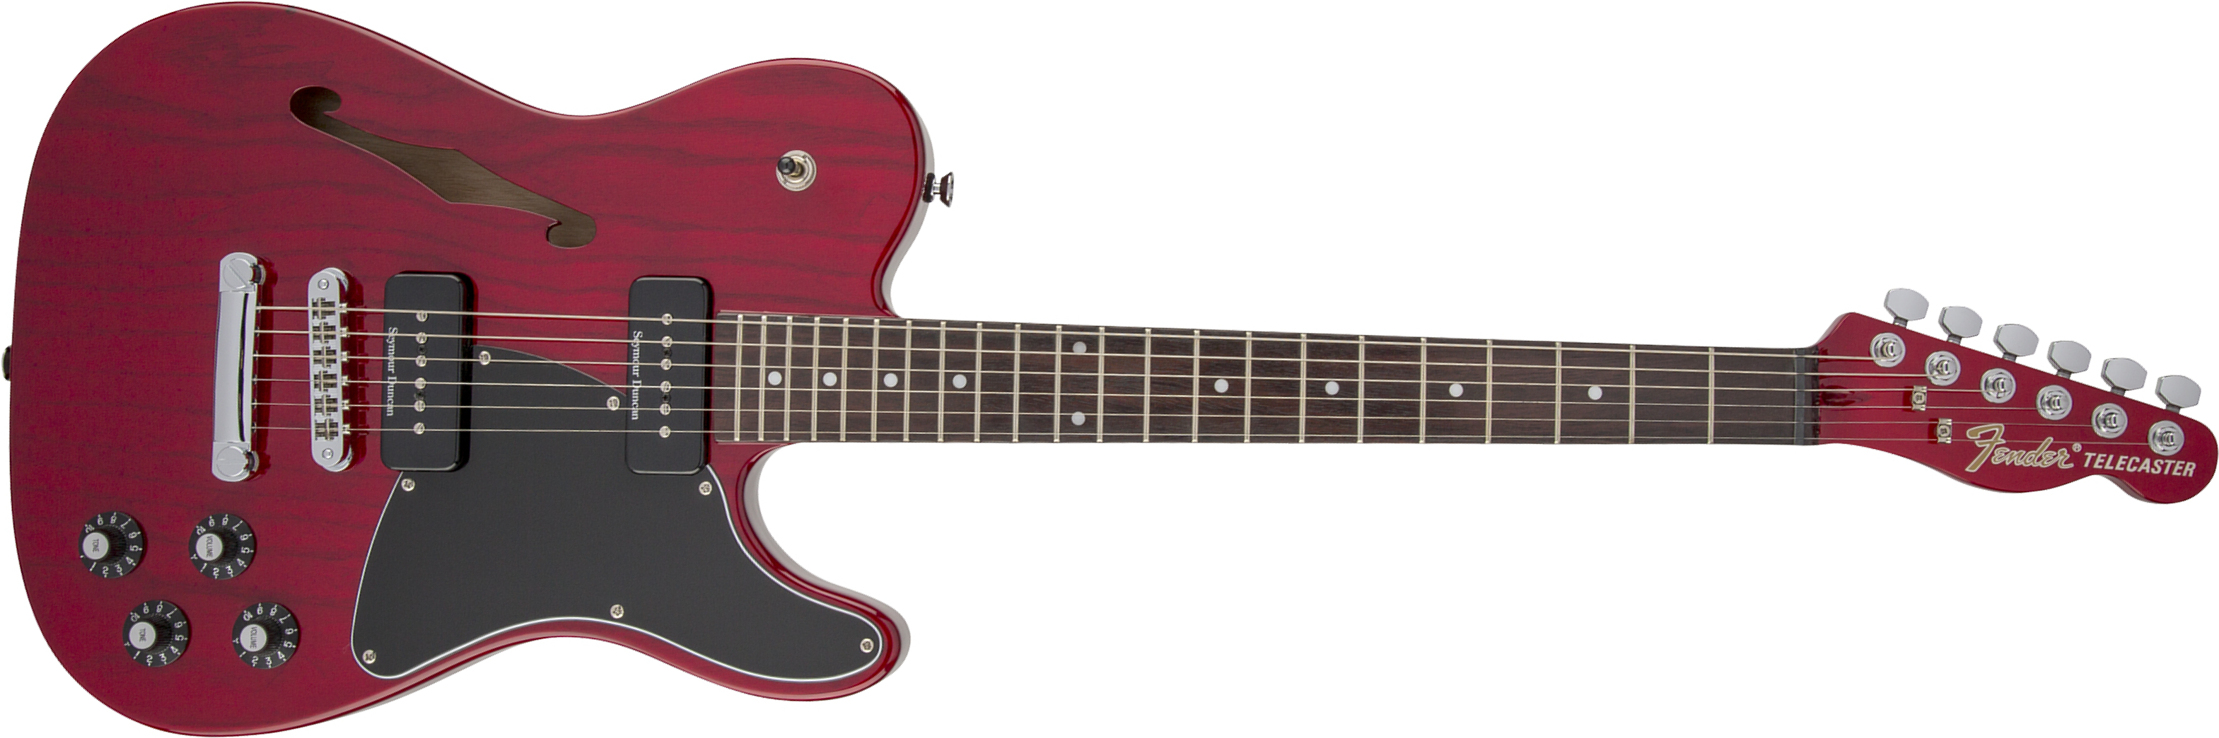 Fender Jim Adkins Tele Ja-90 Mex Signature 2p90 Lau - Crimson Red Transparent - Guitarra eléctrica con forma de tel - Main picture